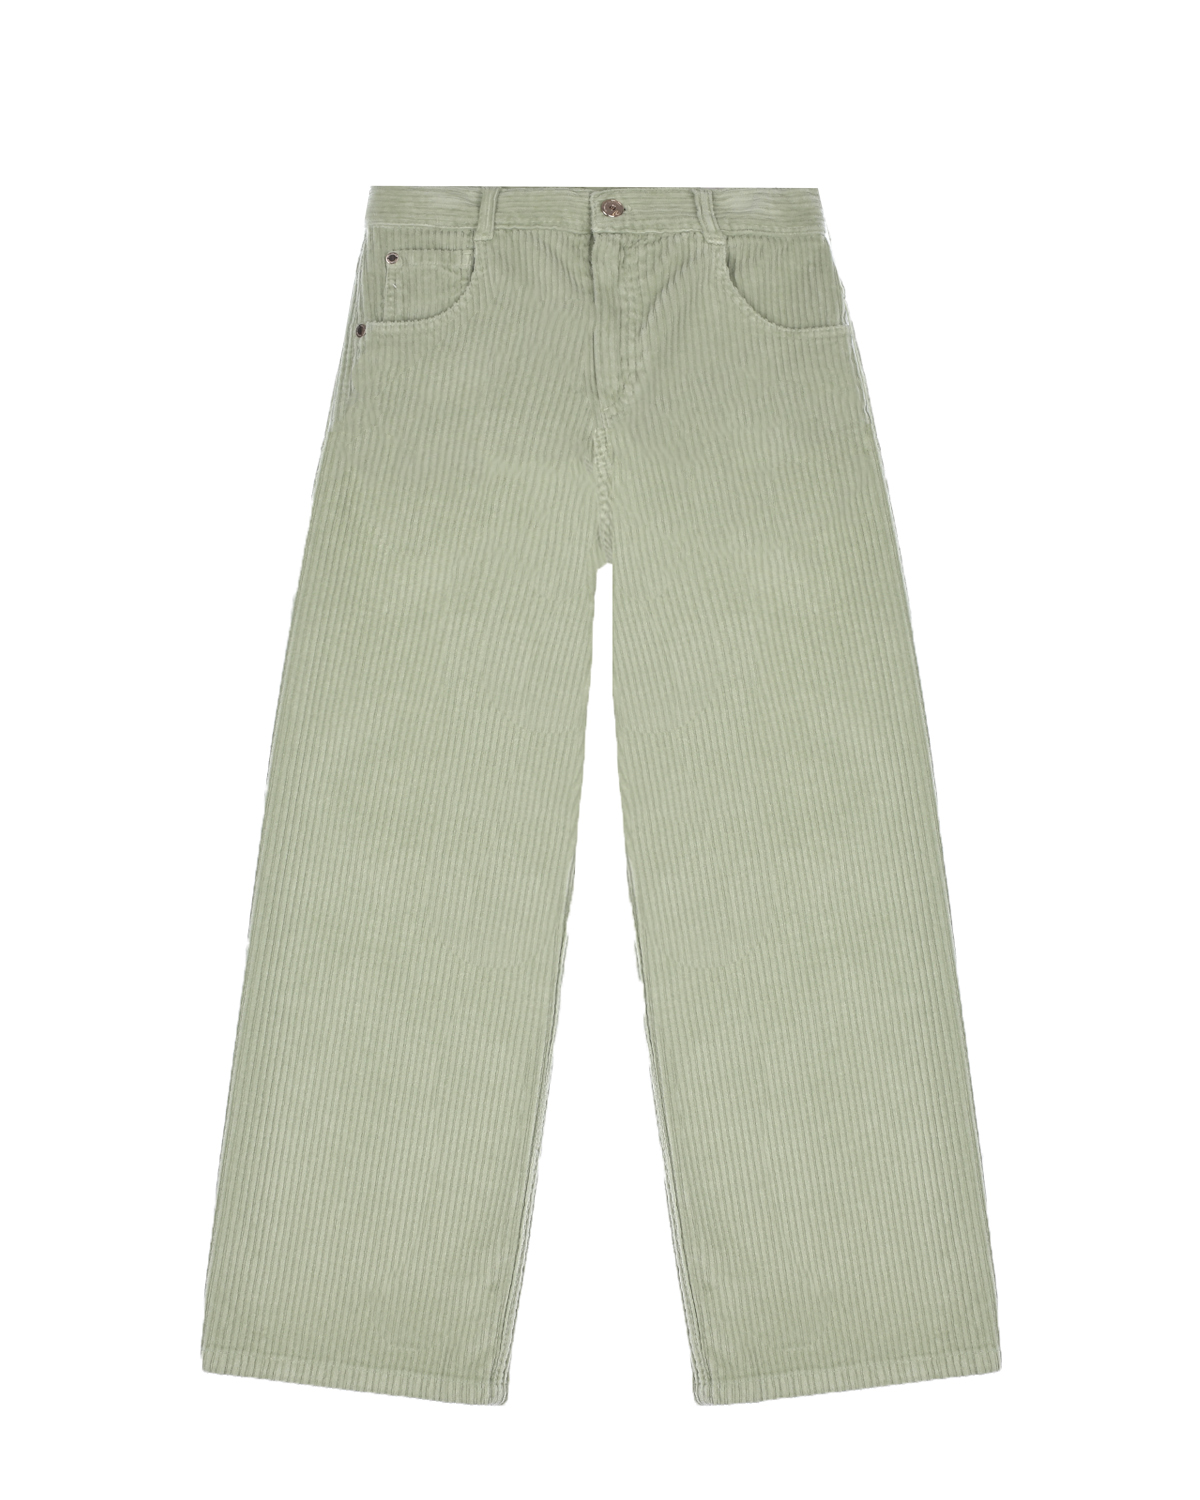 Вельветовые брюки светло-зеленого цвета Brunello Cucinelli детские